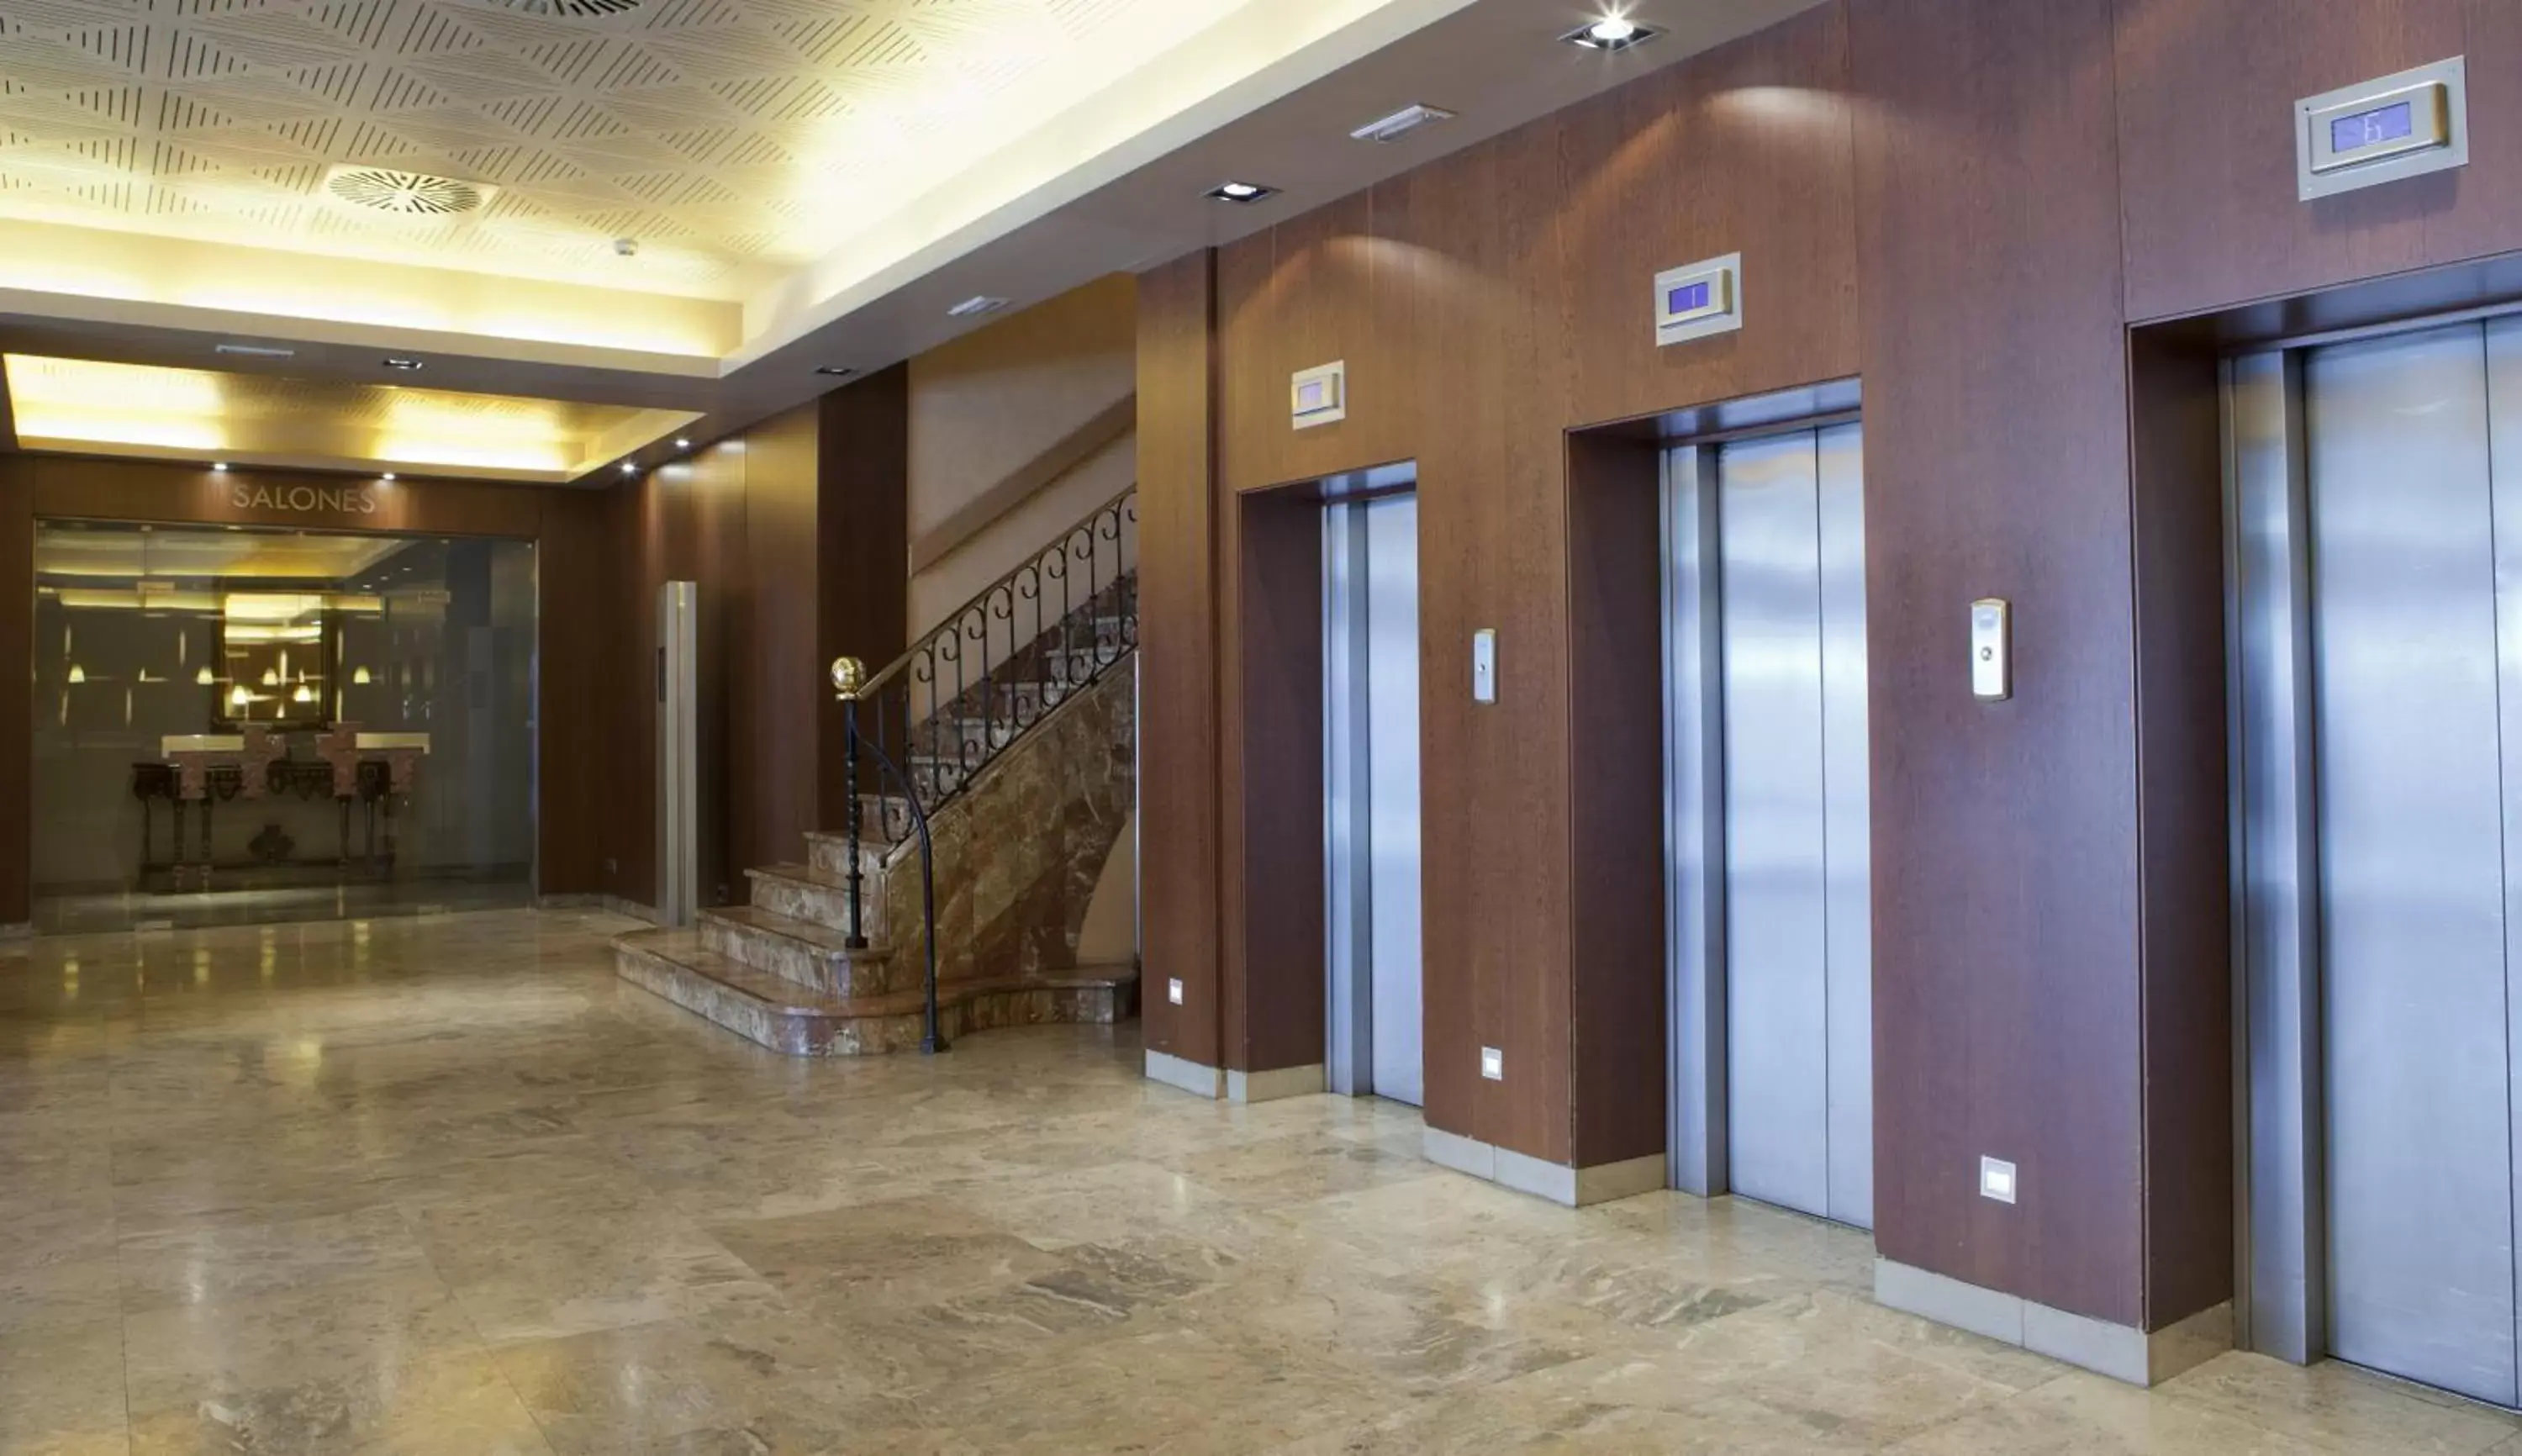 Lobby or reception in Hotel Praga